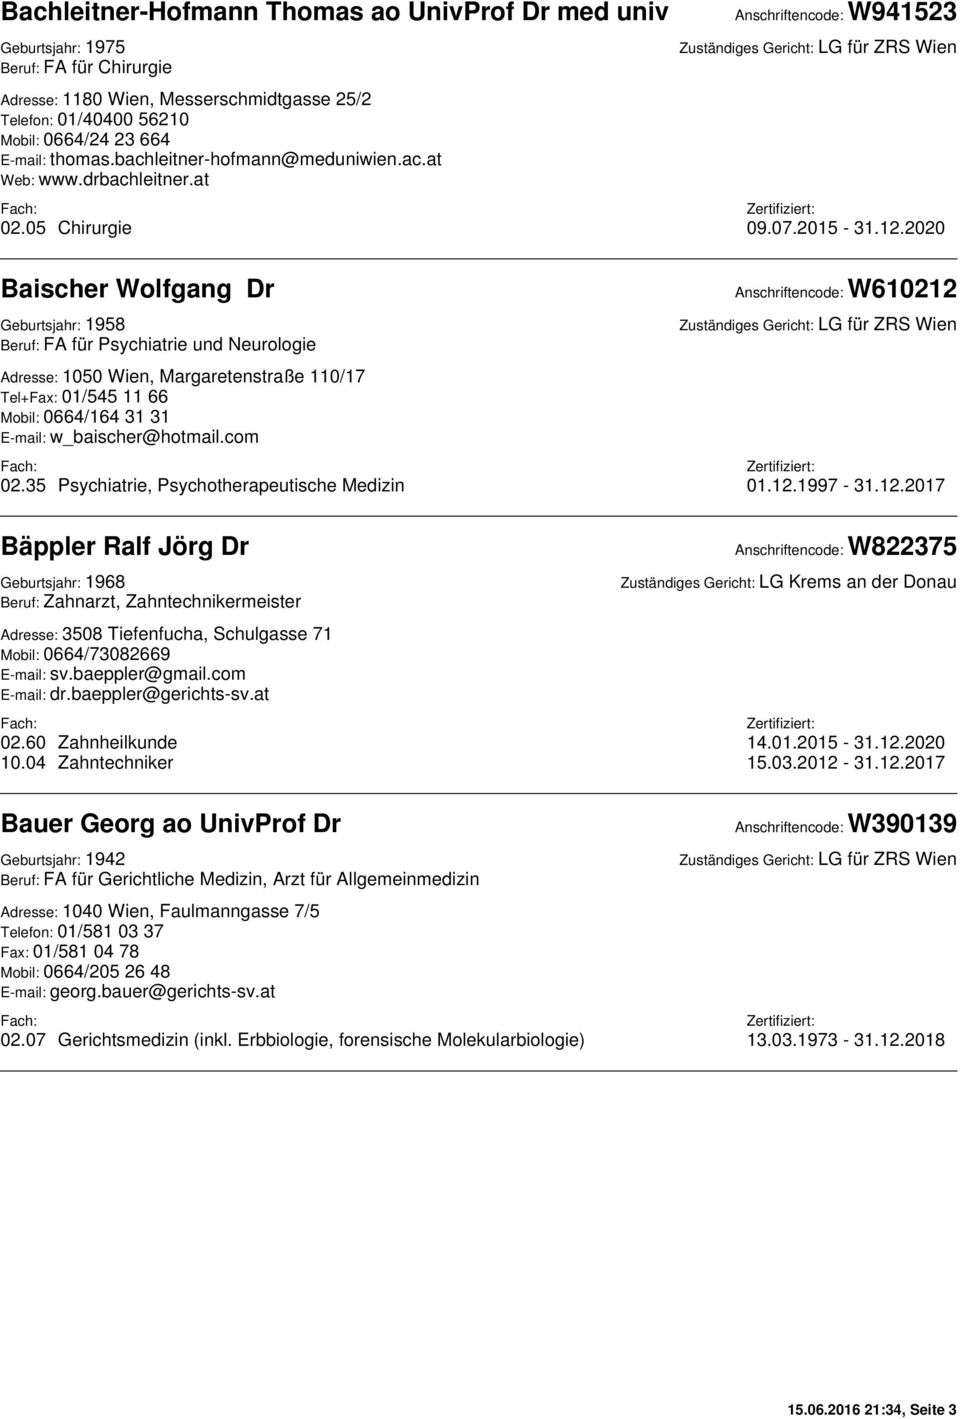 2020 Baischer Wolfgang Dr Geburtsjahr: 1958 Beruf: FA für Psychiatrie und Neurologie Adresse: 1050 Wien, Margaretenstraße 110/17 Tel+Fax: 01/545 11 66 Mobil: 0664/164 31 31 E-mail: w_baischer@hotmail.